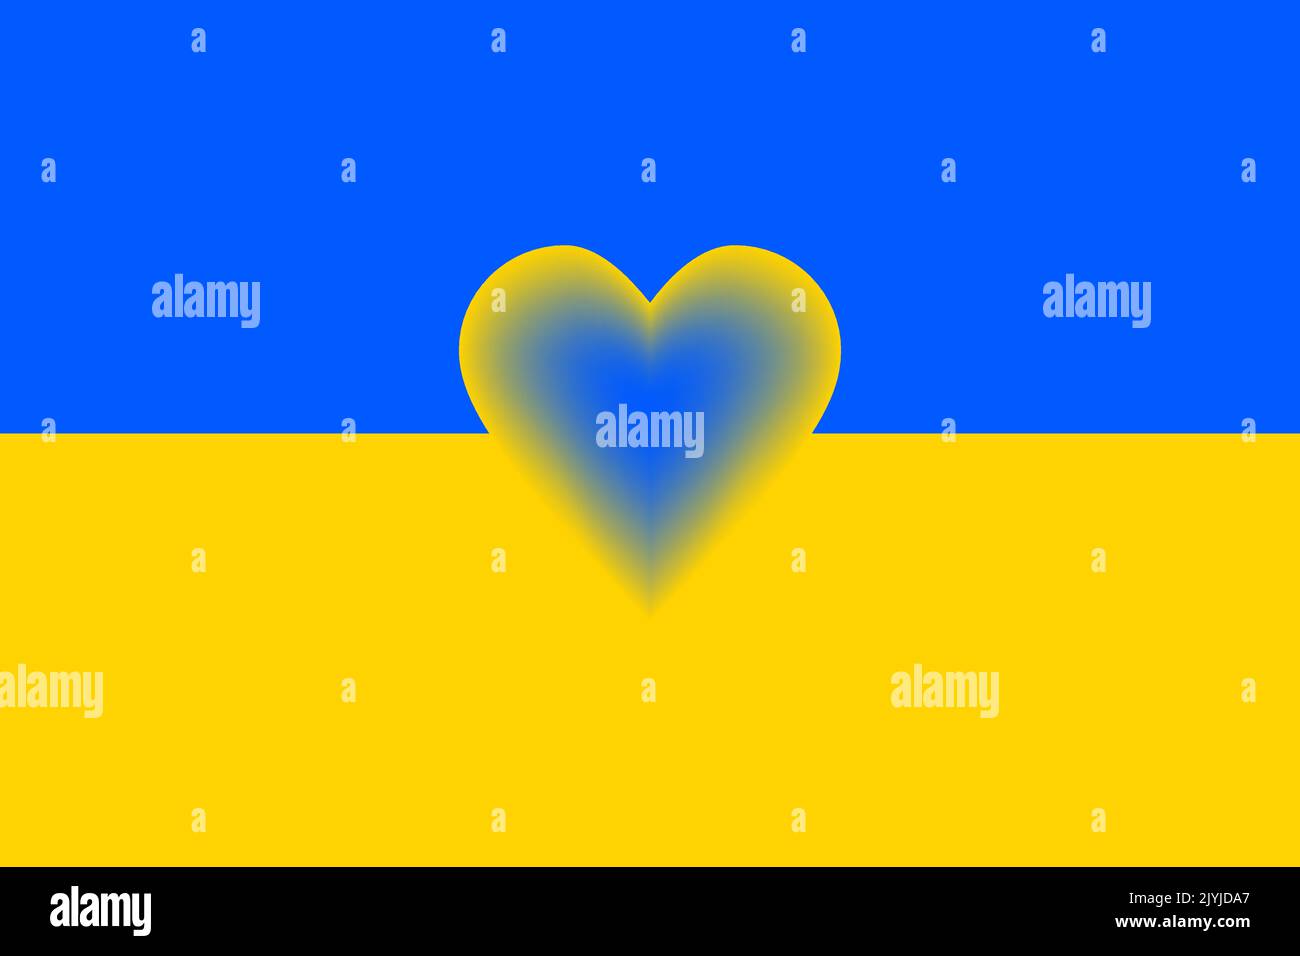 Ukraine national flag symbol. Pray for Ukraine. Vector illustration. Stock Vector